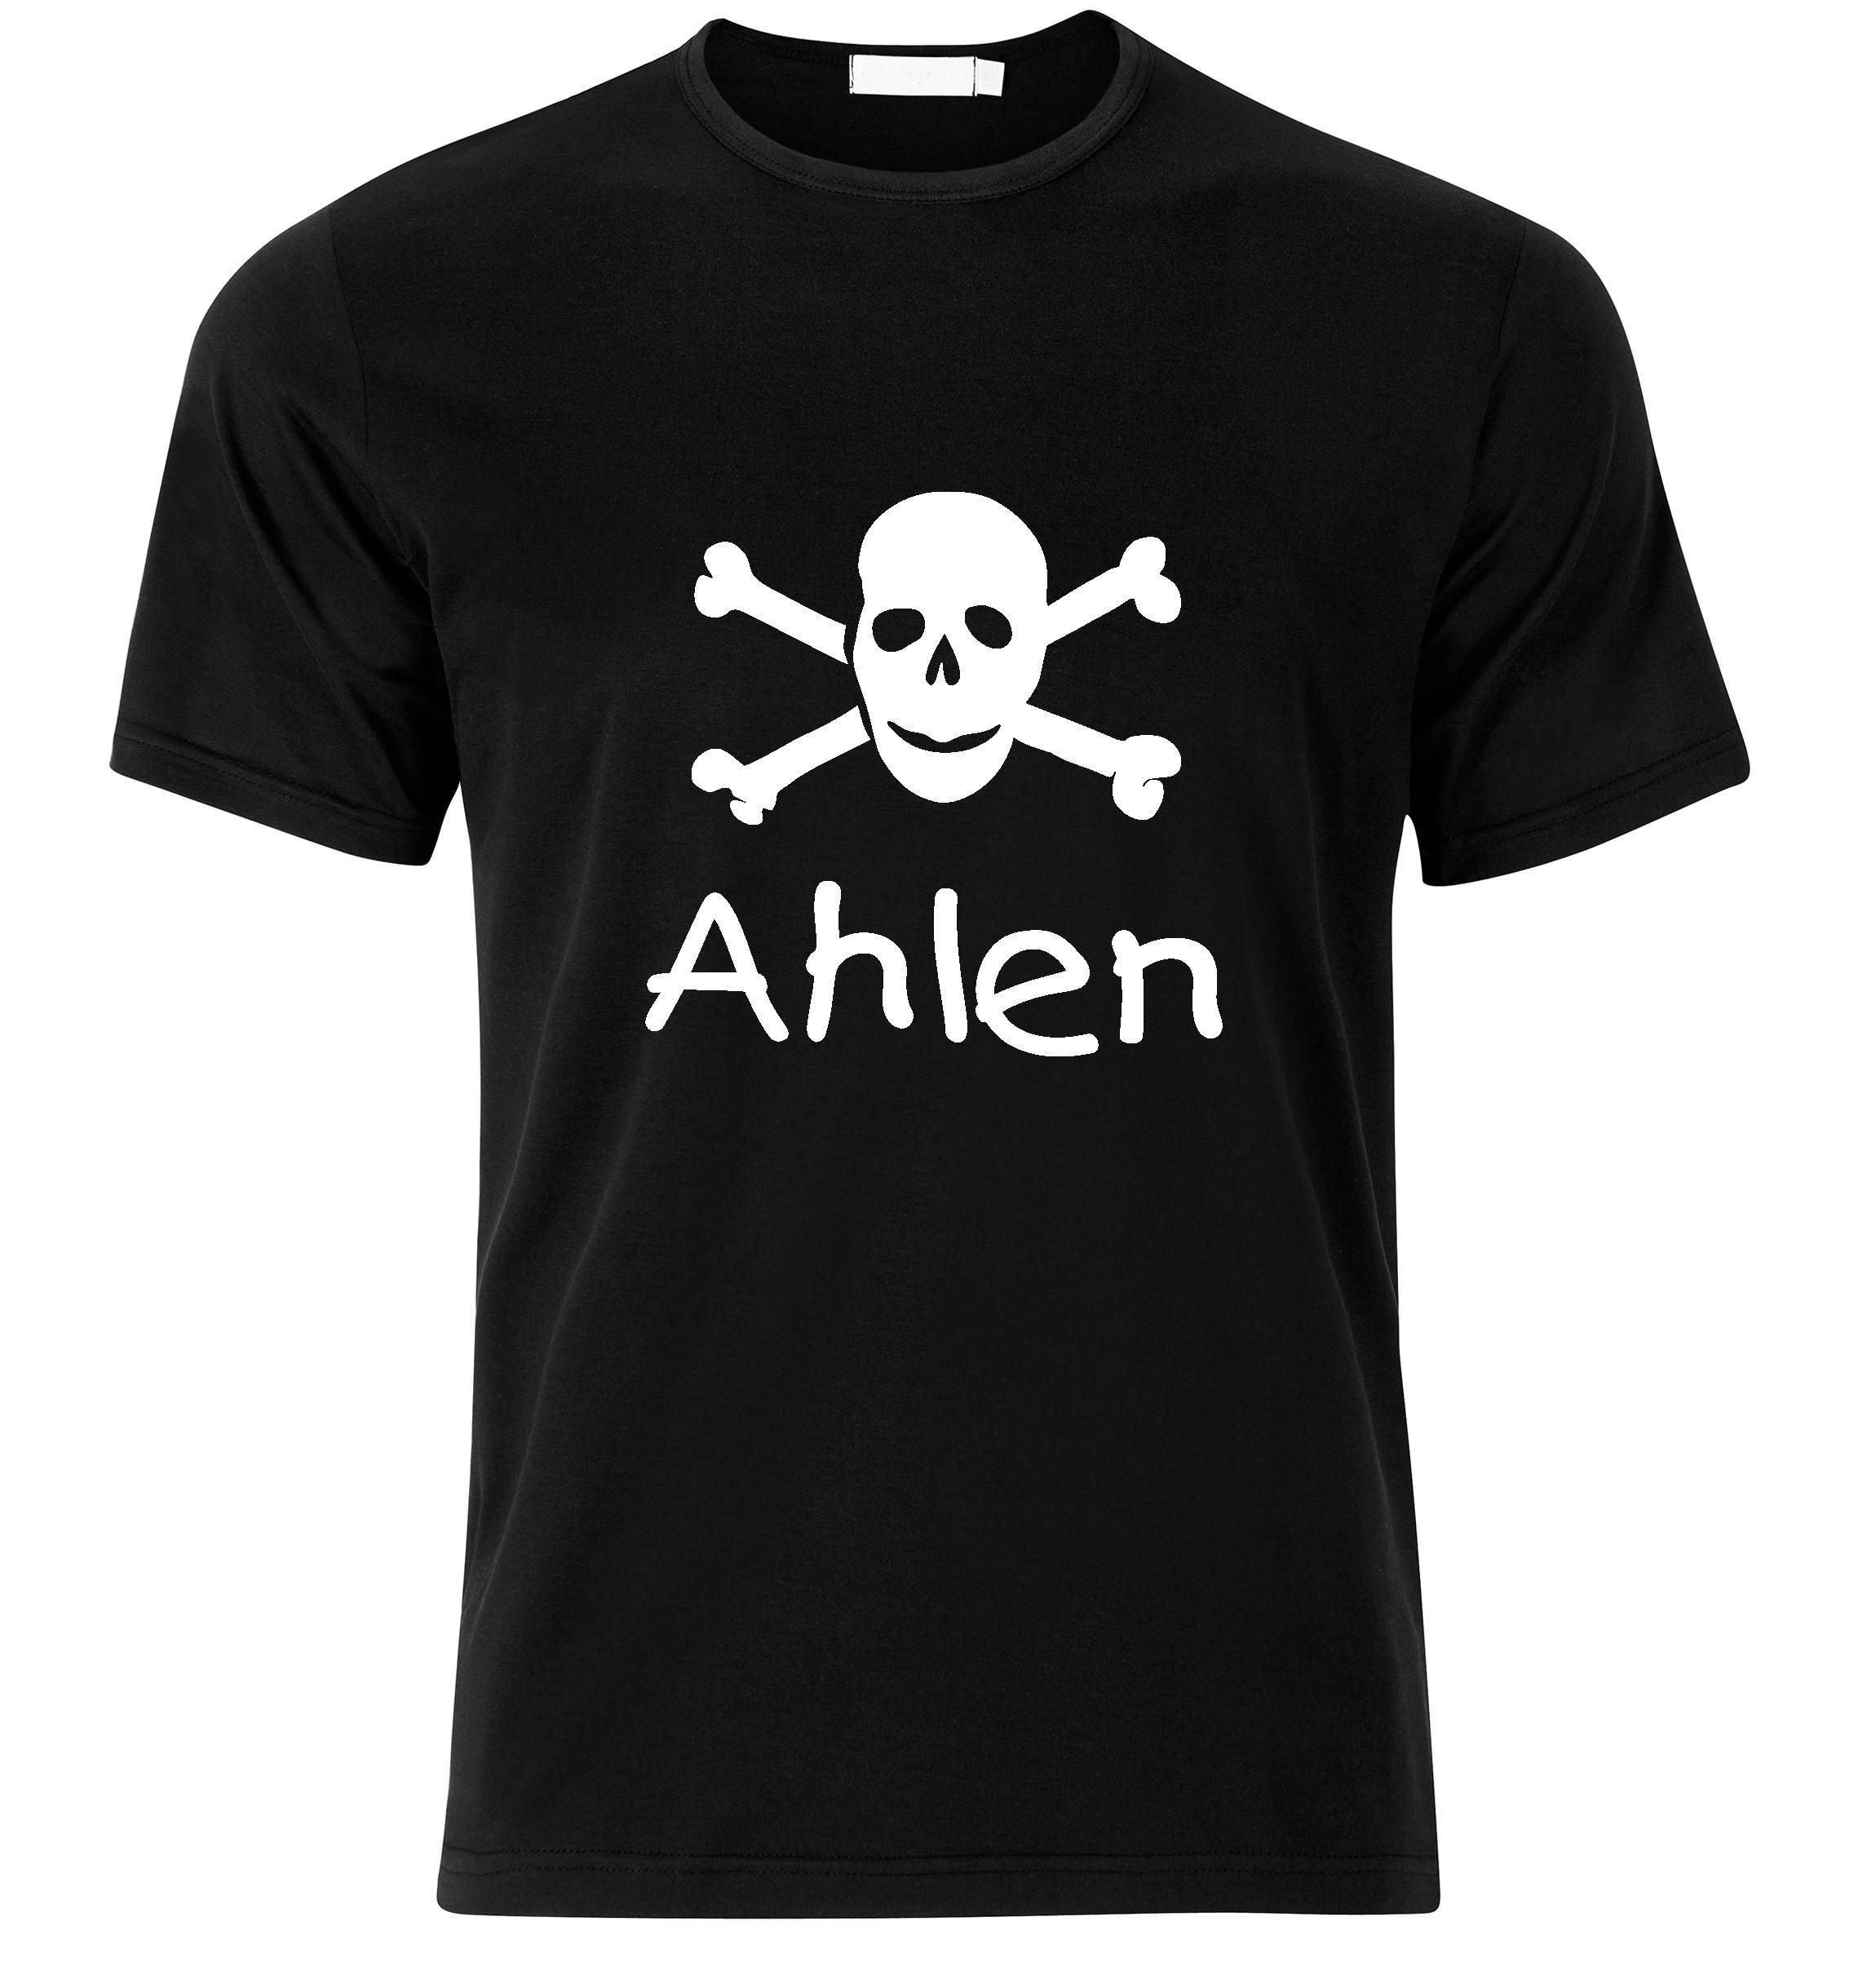 T-Shirt Ahlen Jolly Roger, Totenkopf